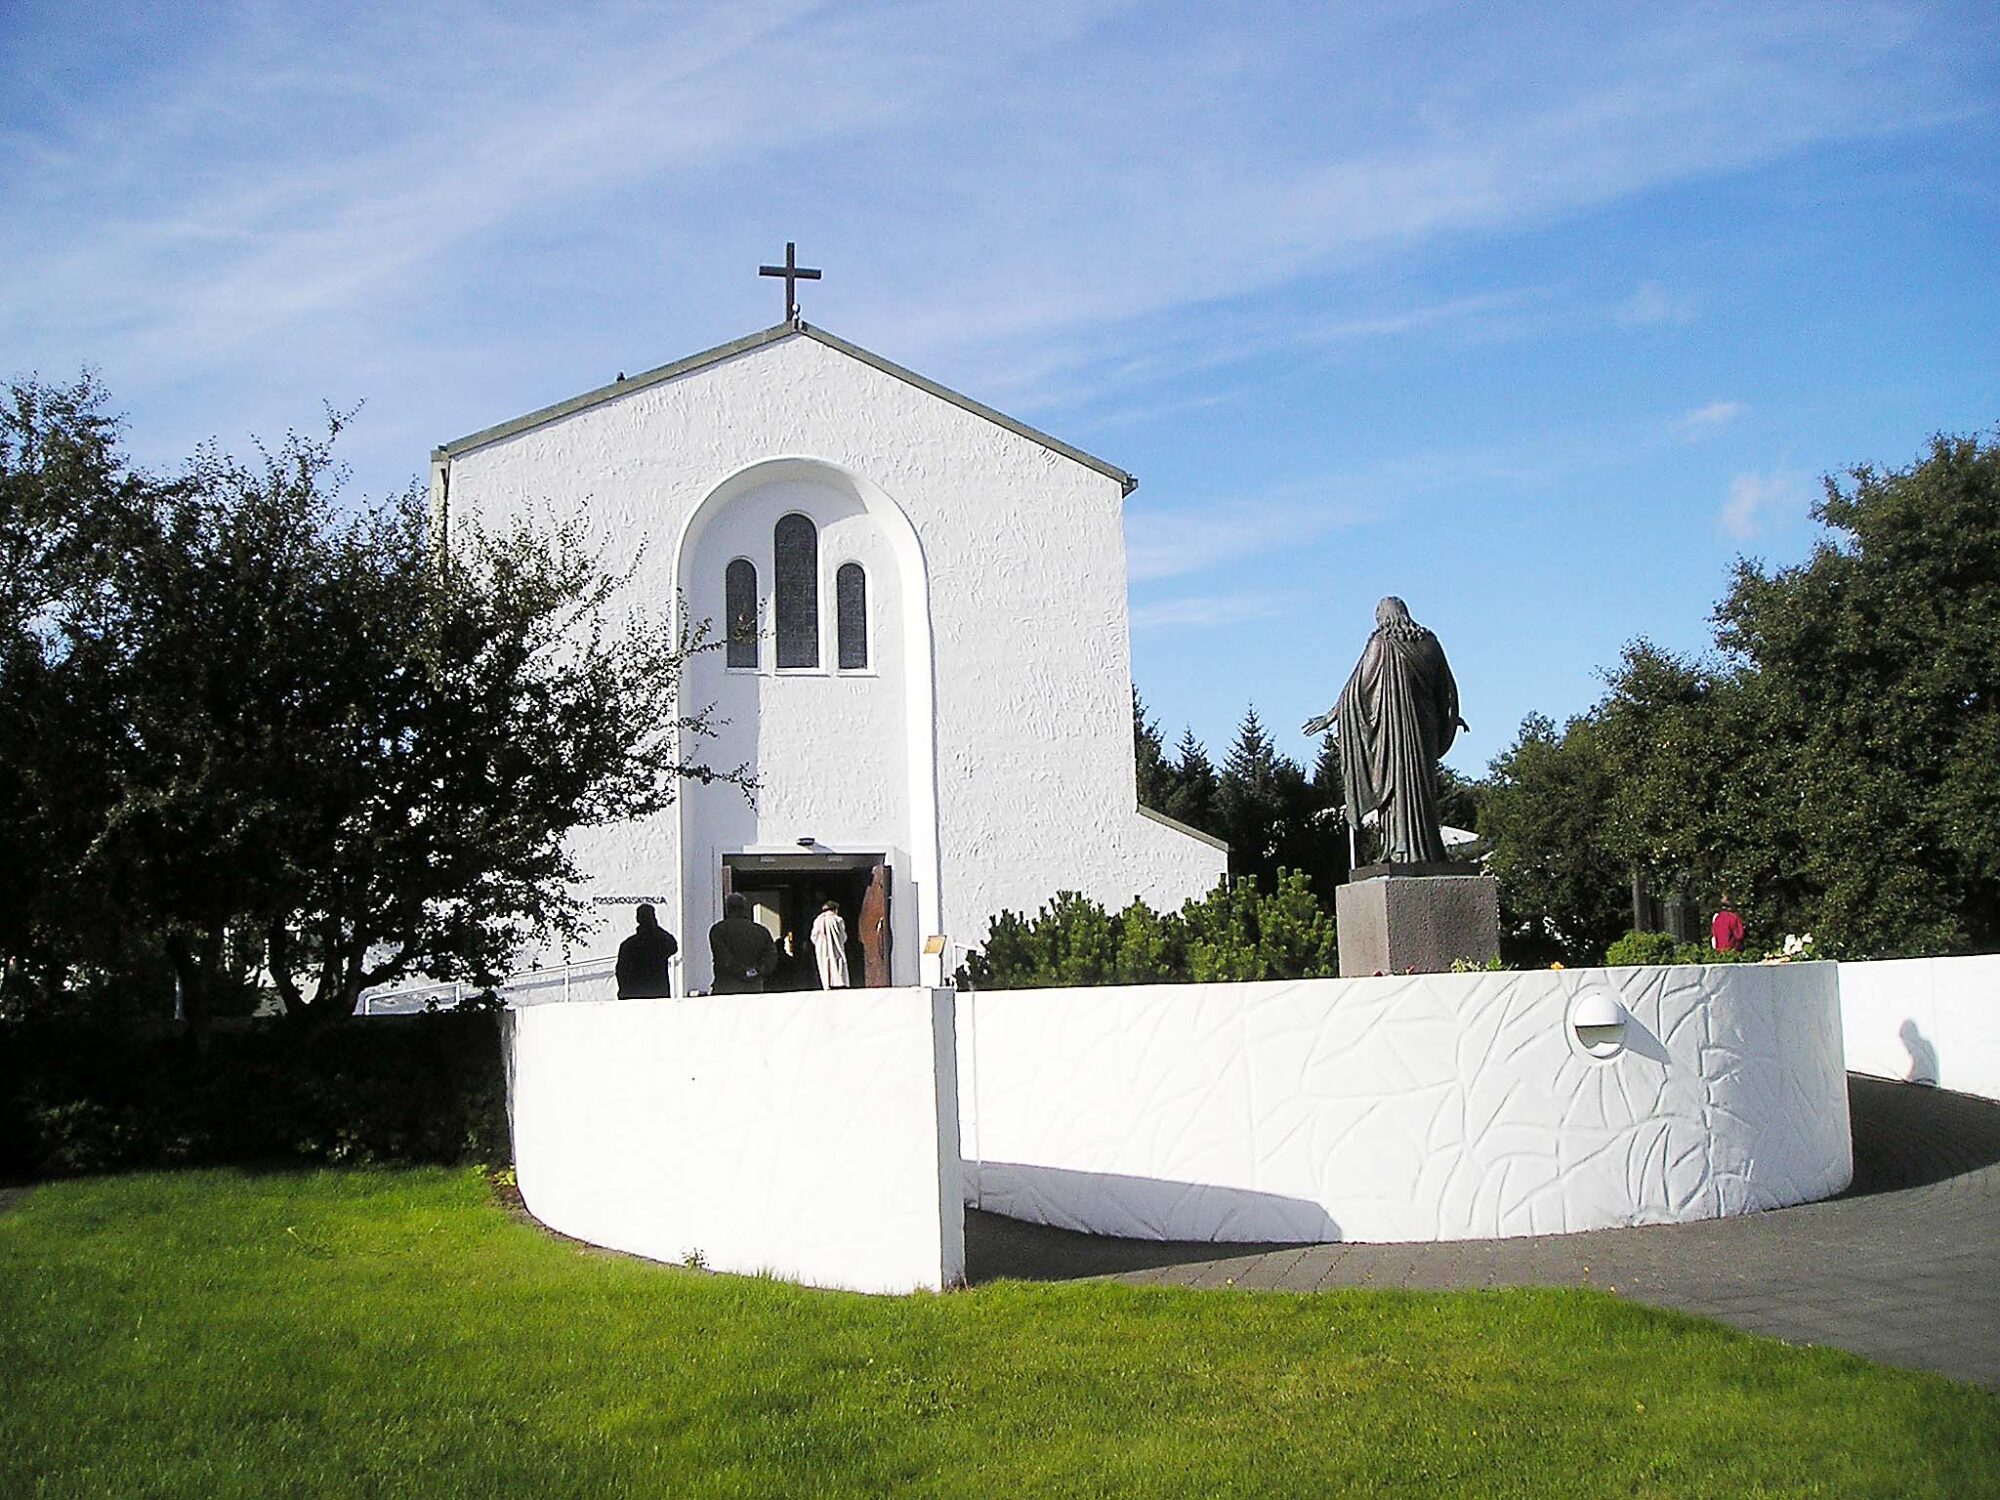 Høy, hvit kirke av mur med en grå statue utenfor.